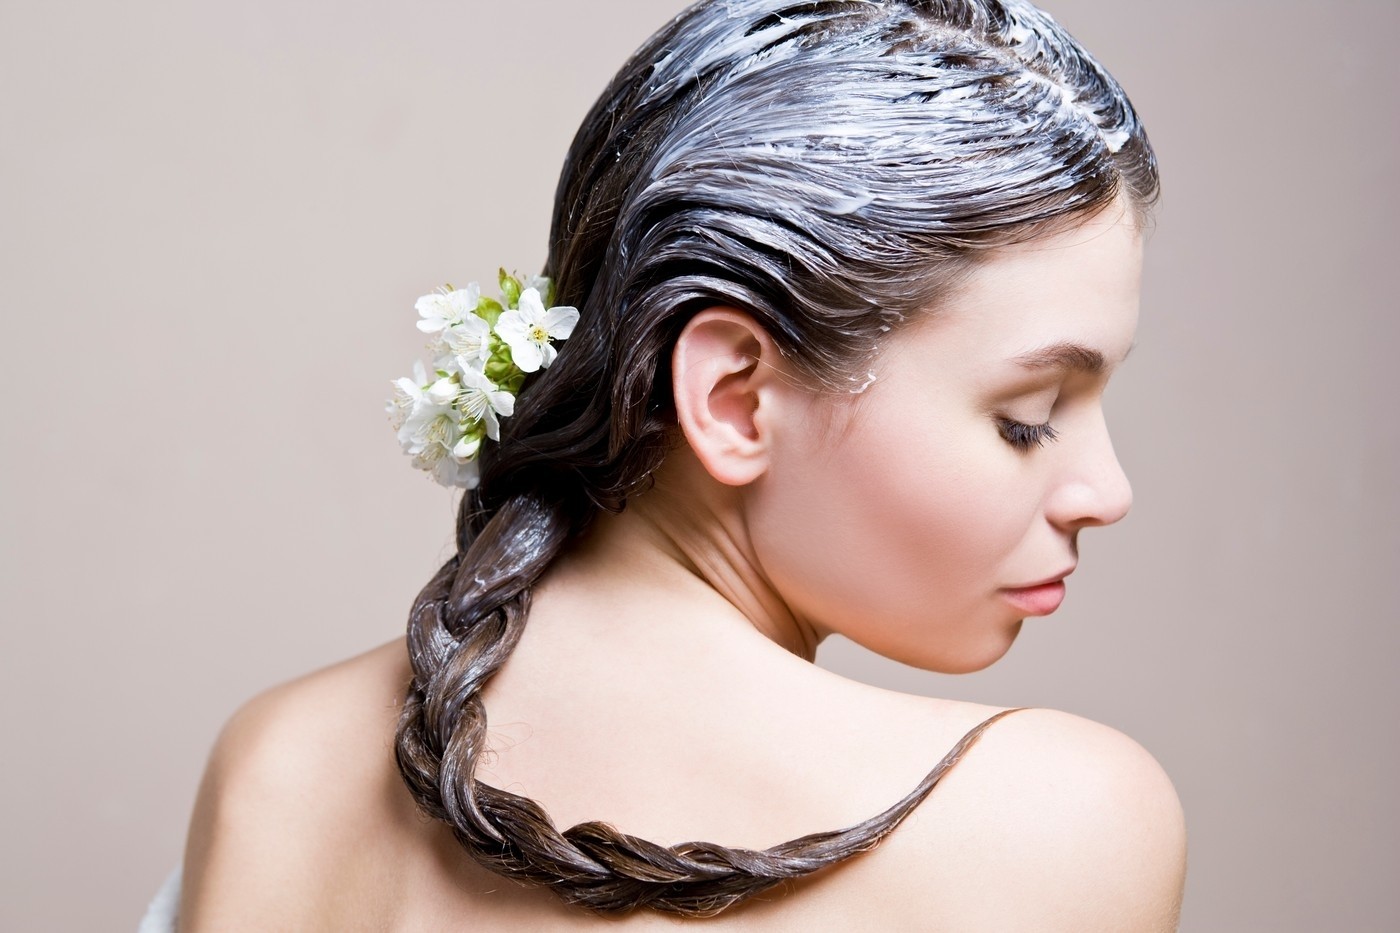 Как остановить выпадения волос у женщин?